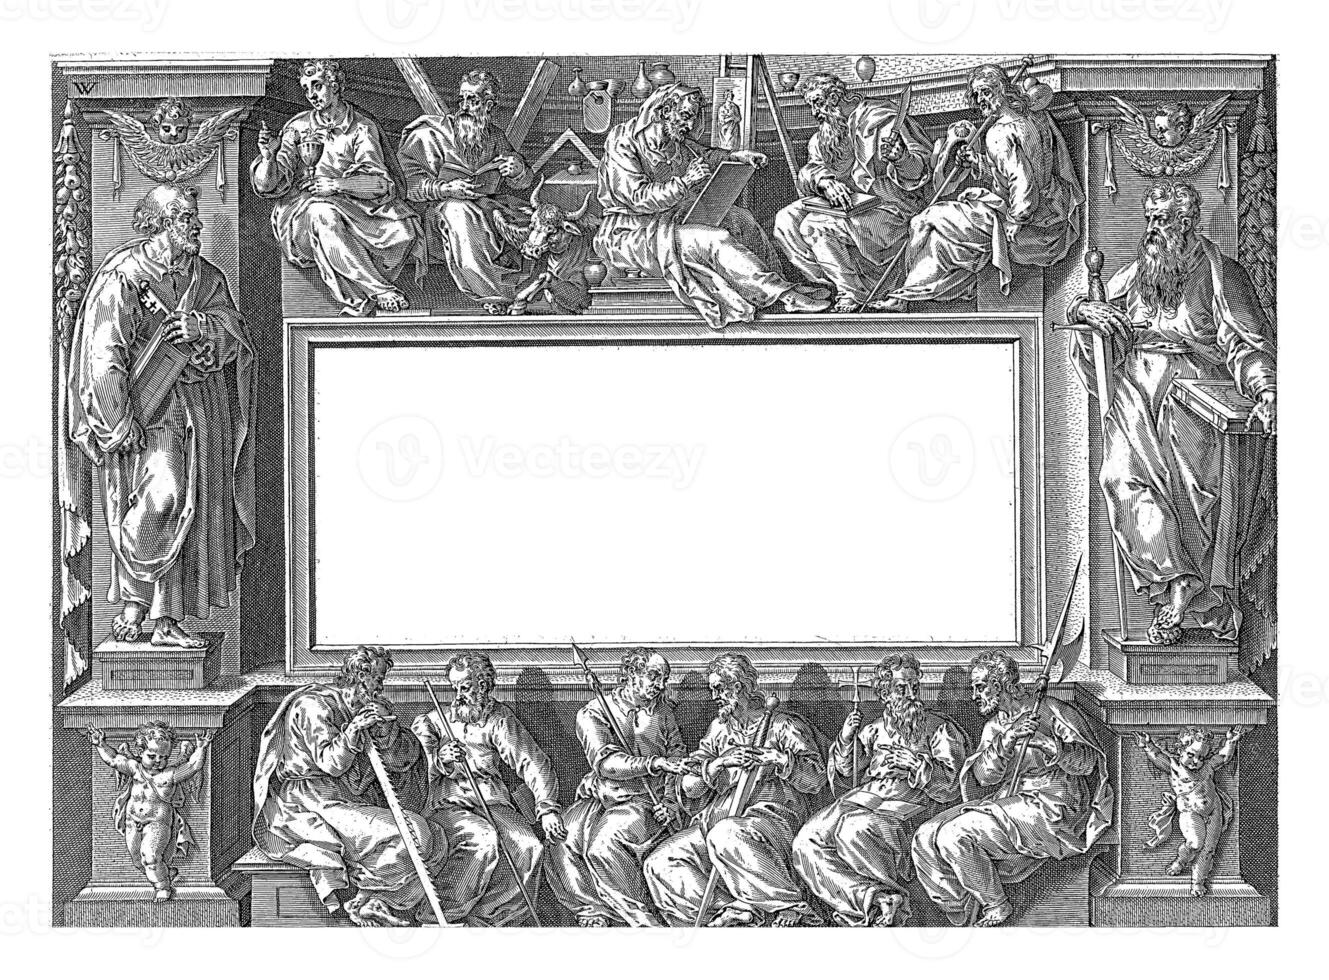 título impressão do a Series sobre a atos do a apóstolos, Nicolaes vischer foto